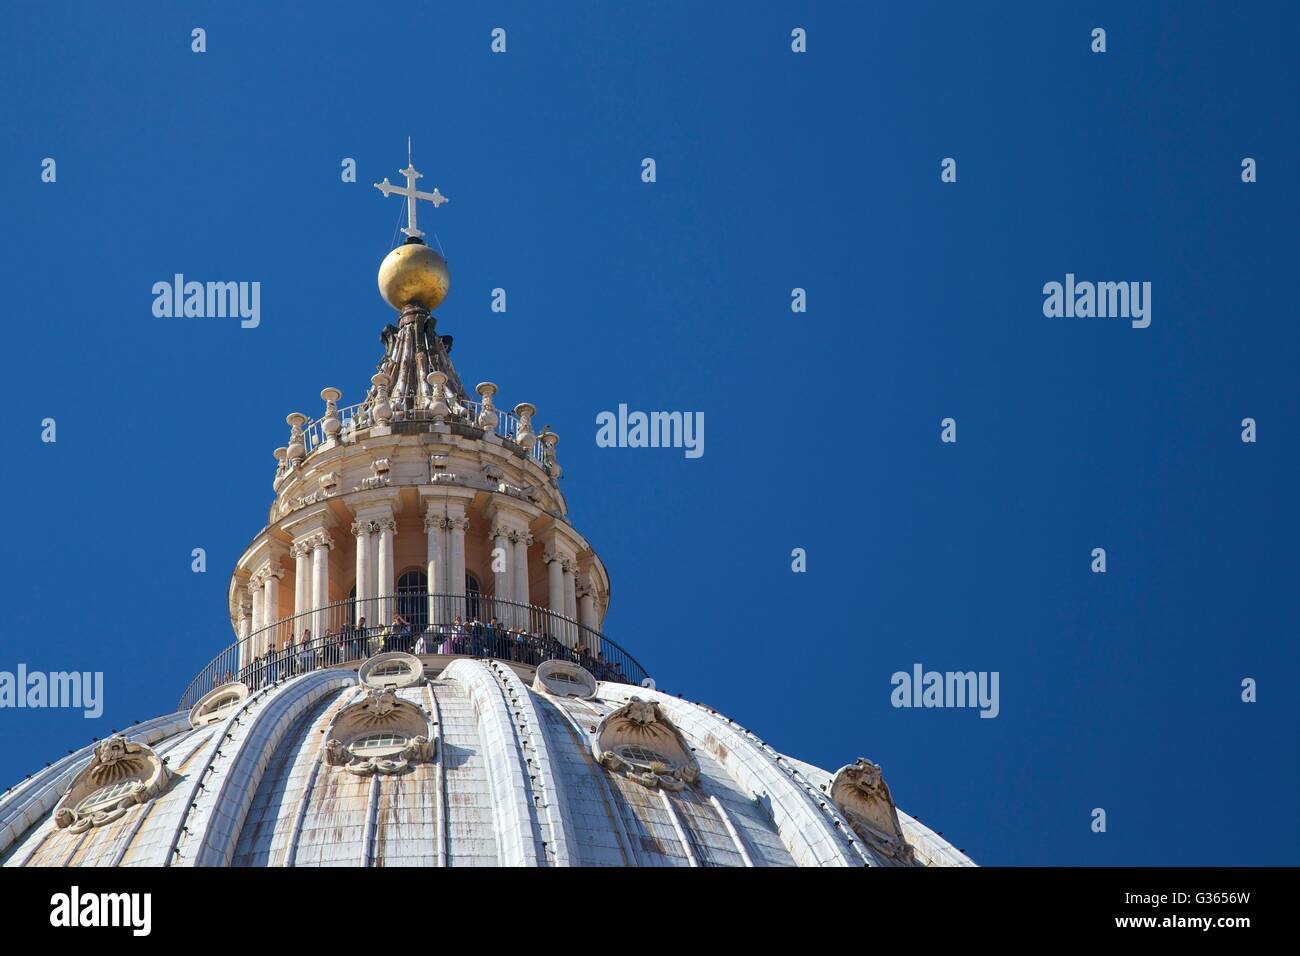 Außen auf dem Dach Blick auf die Kuppel der Kathedrale St. Peter, Vatikan, Rom, Italien, Europa Stockfoto